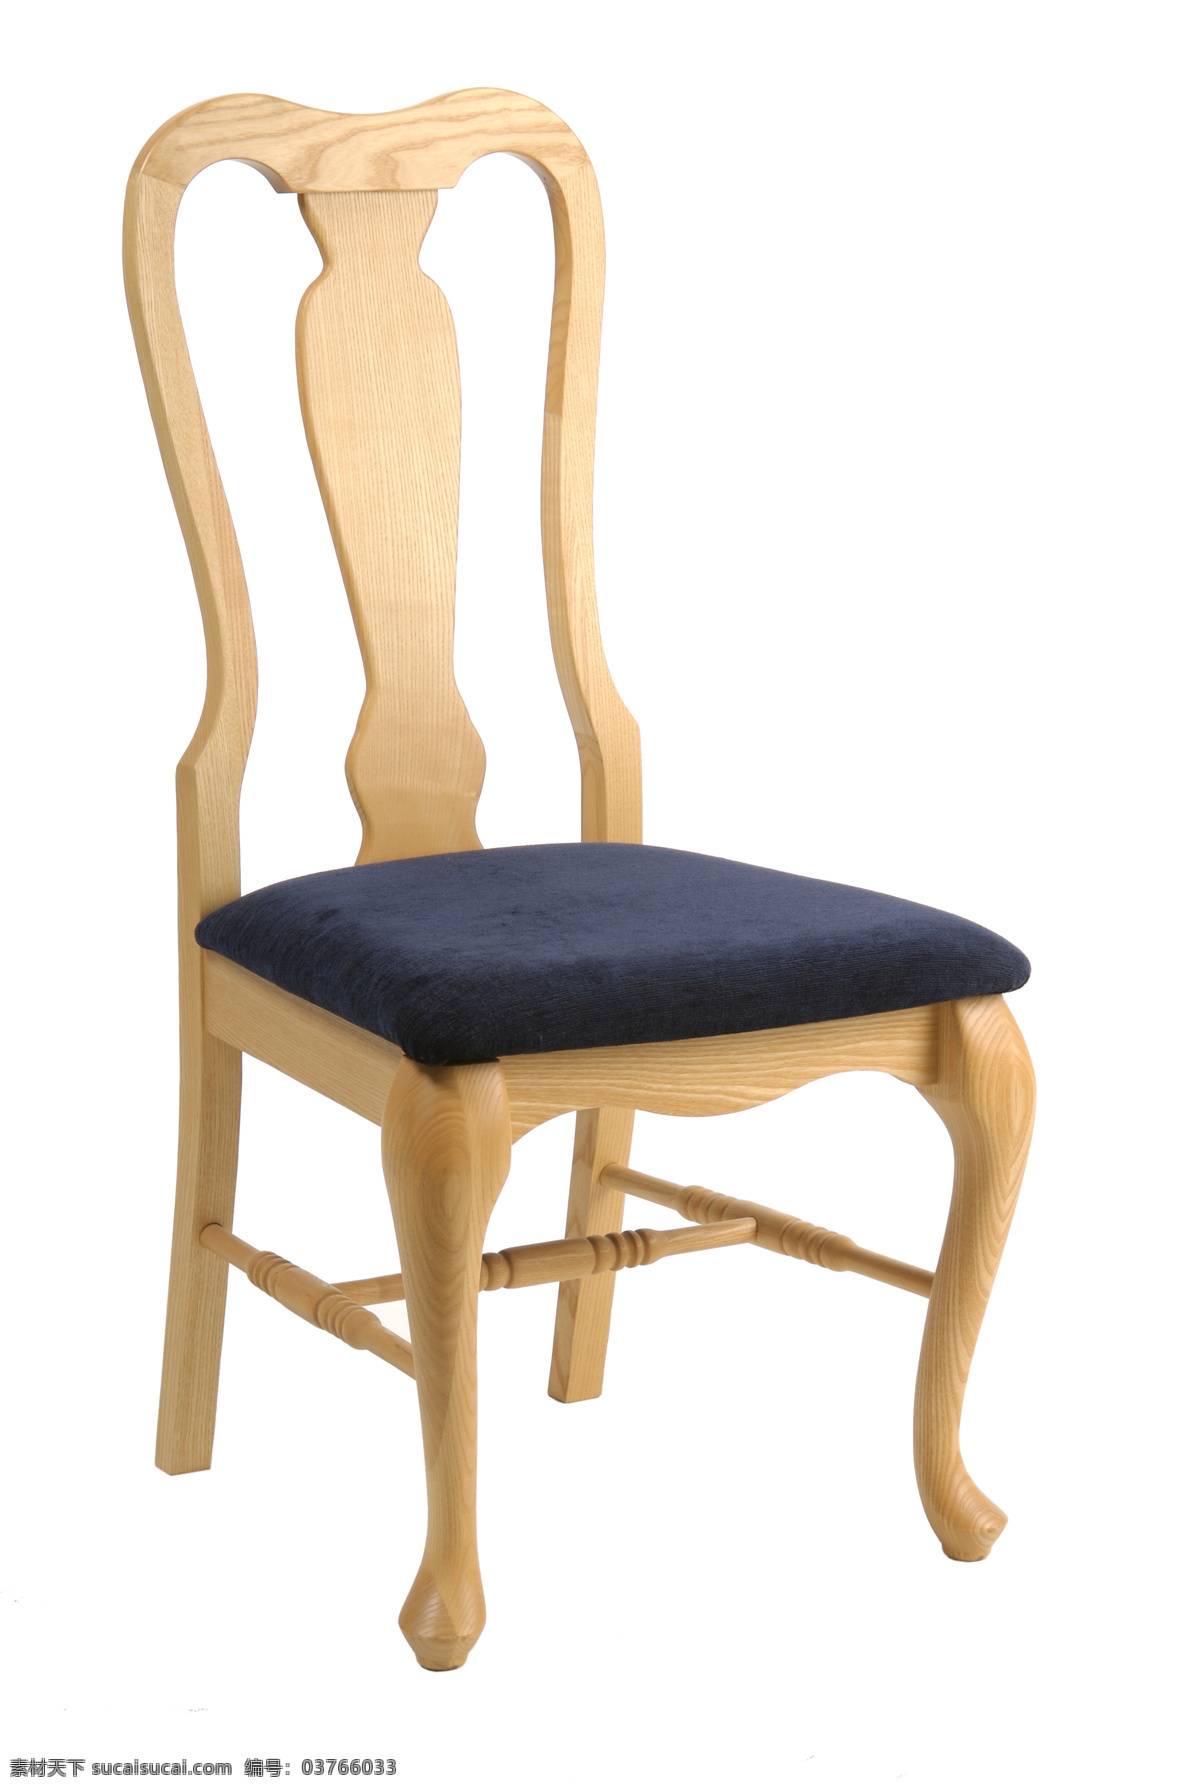 欧式 椅子 木椅子 凳子 家具 木制家具 靠背椅 沙发椅子 垫子 欧式沙发 家具电器 生活百科